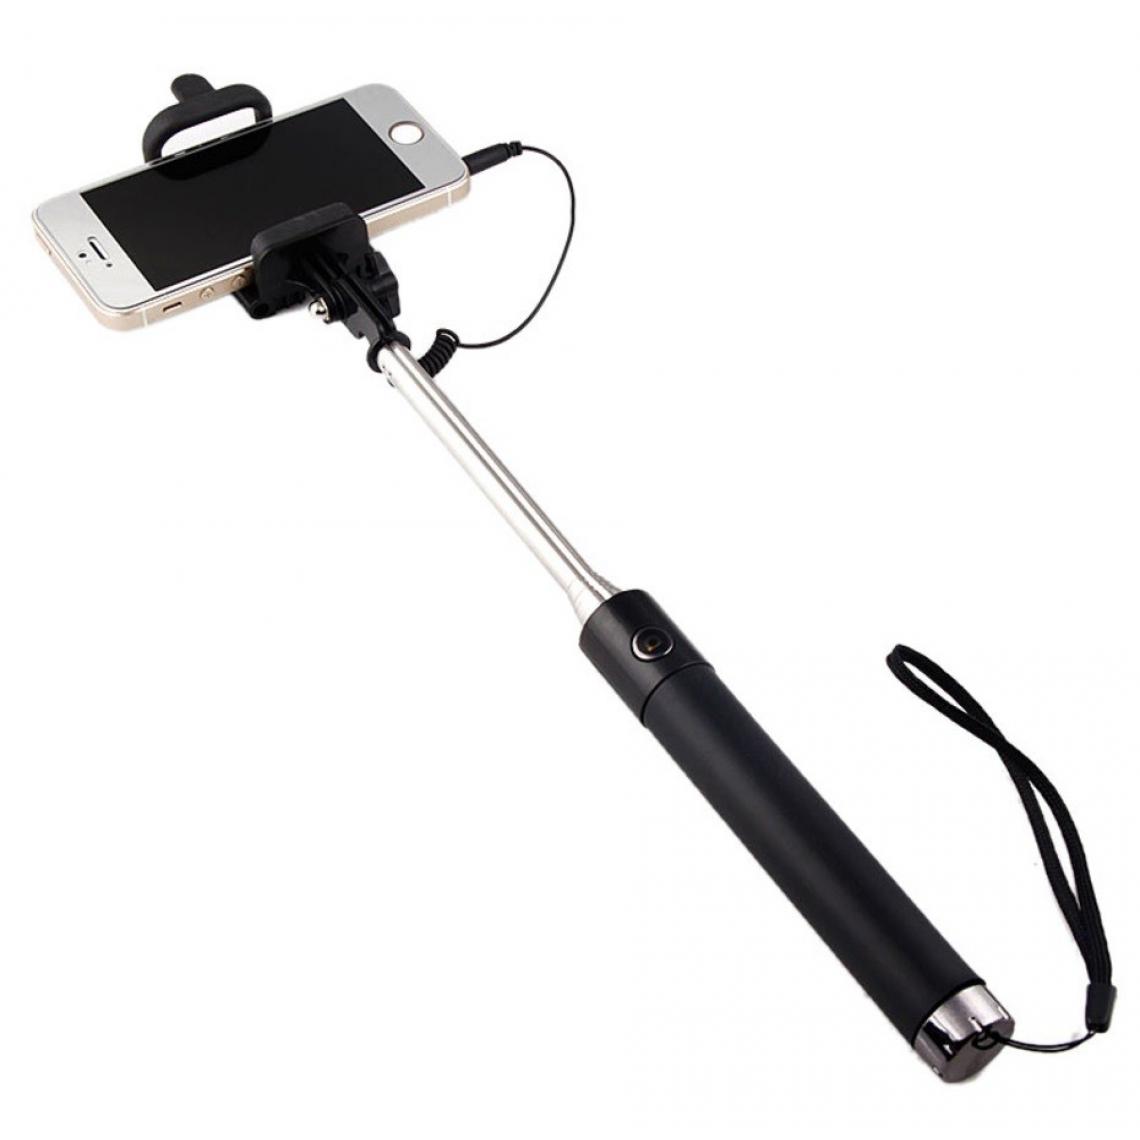 Shot - Selfie Stick Metal pour BLACKBERRY KEY2 LE Smartphone Perche Android IOS Reglable Bouton Photo Cable Jack Noir - Autres accessoires smartphone